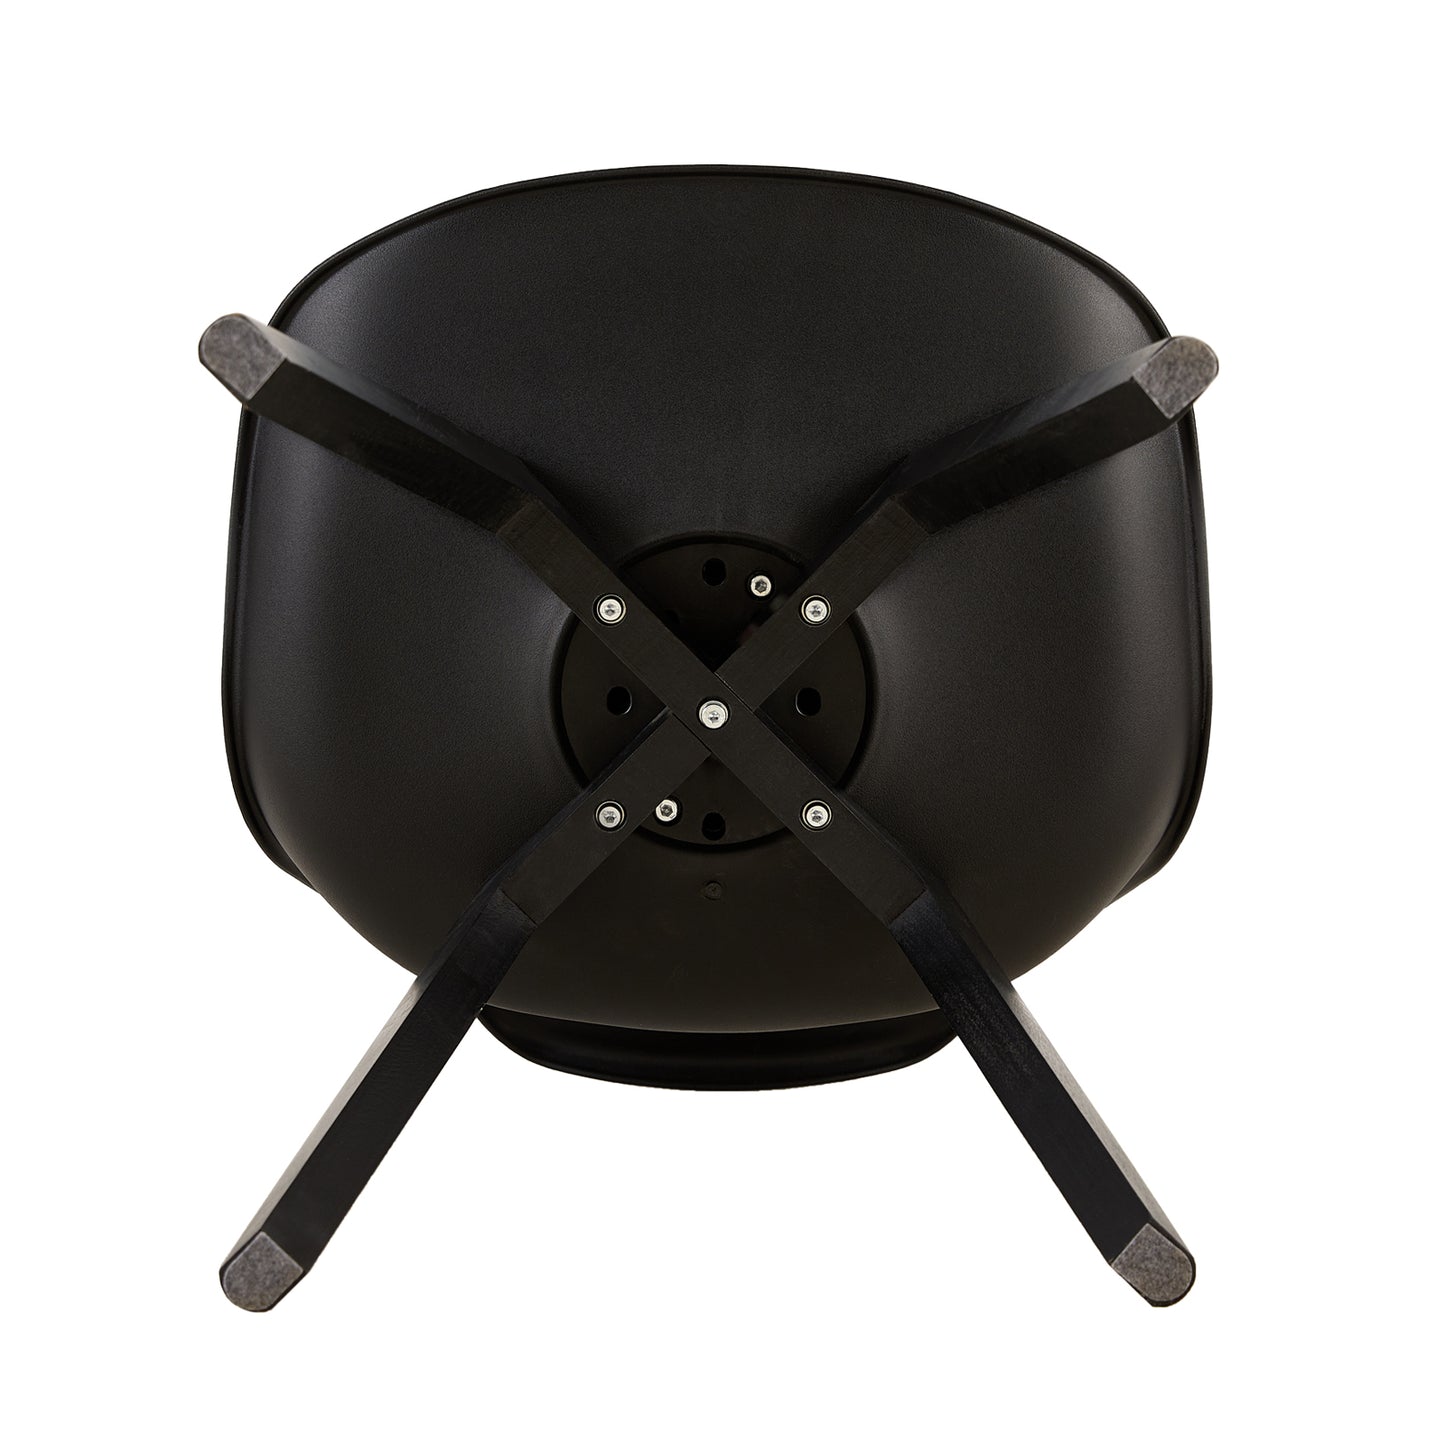 1 chaise de salle à manger design contemporain scandinave - Noir